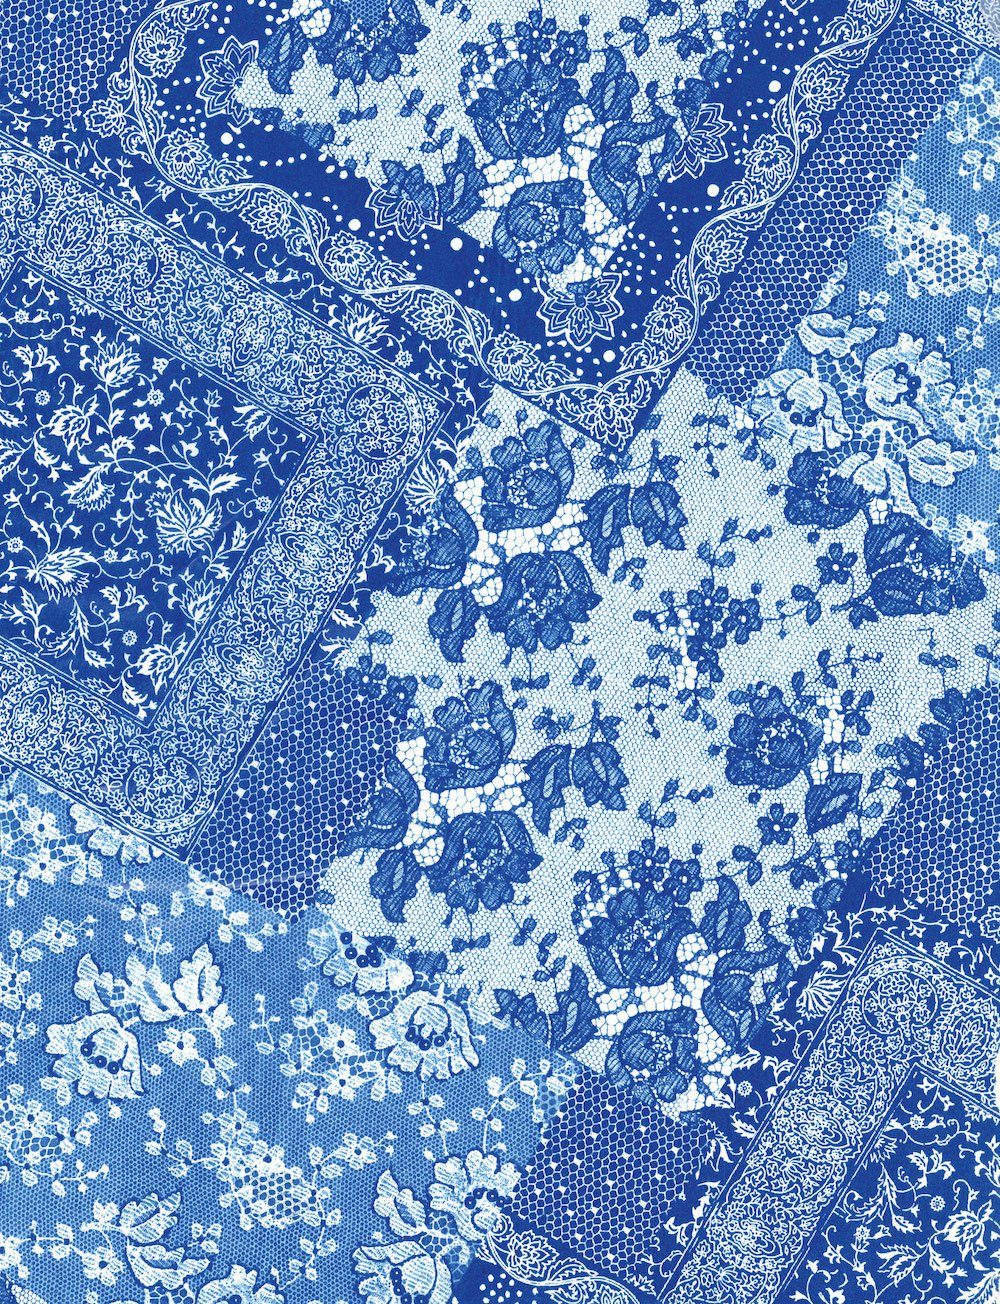 H-Erzmade Zeichenpapier Décopatch-Papier 629 Spitze blau, 30 x 40 cm